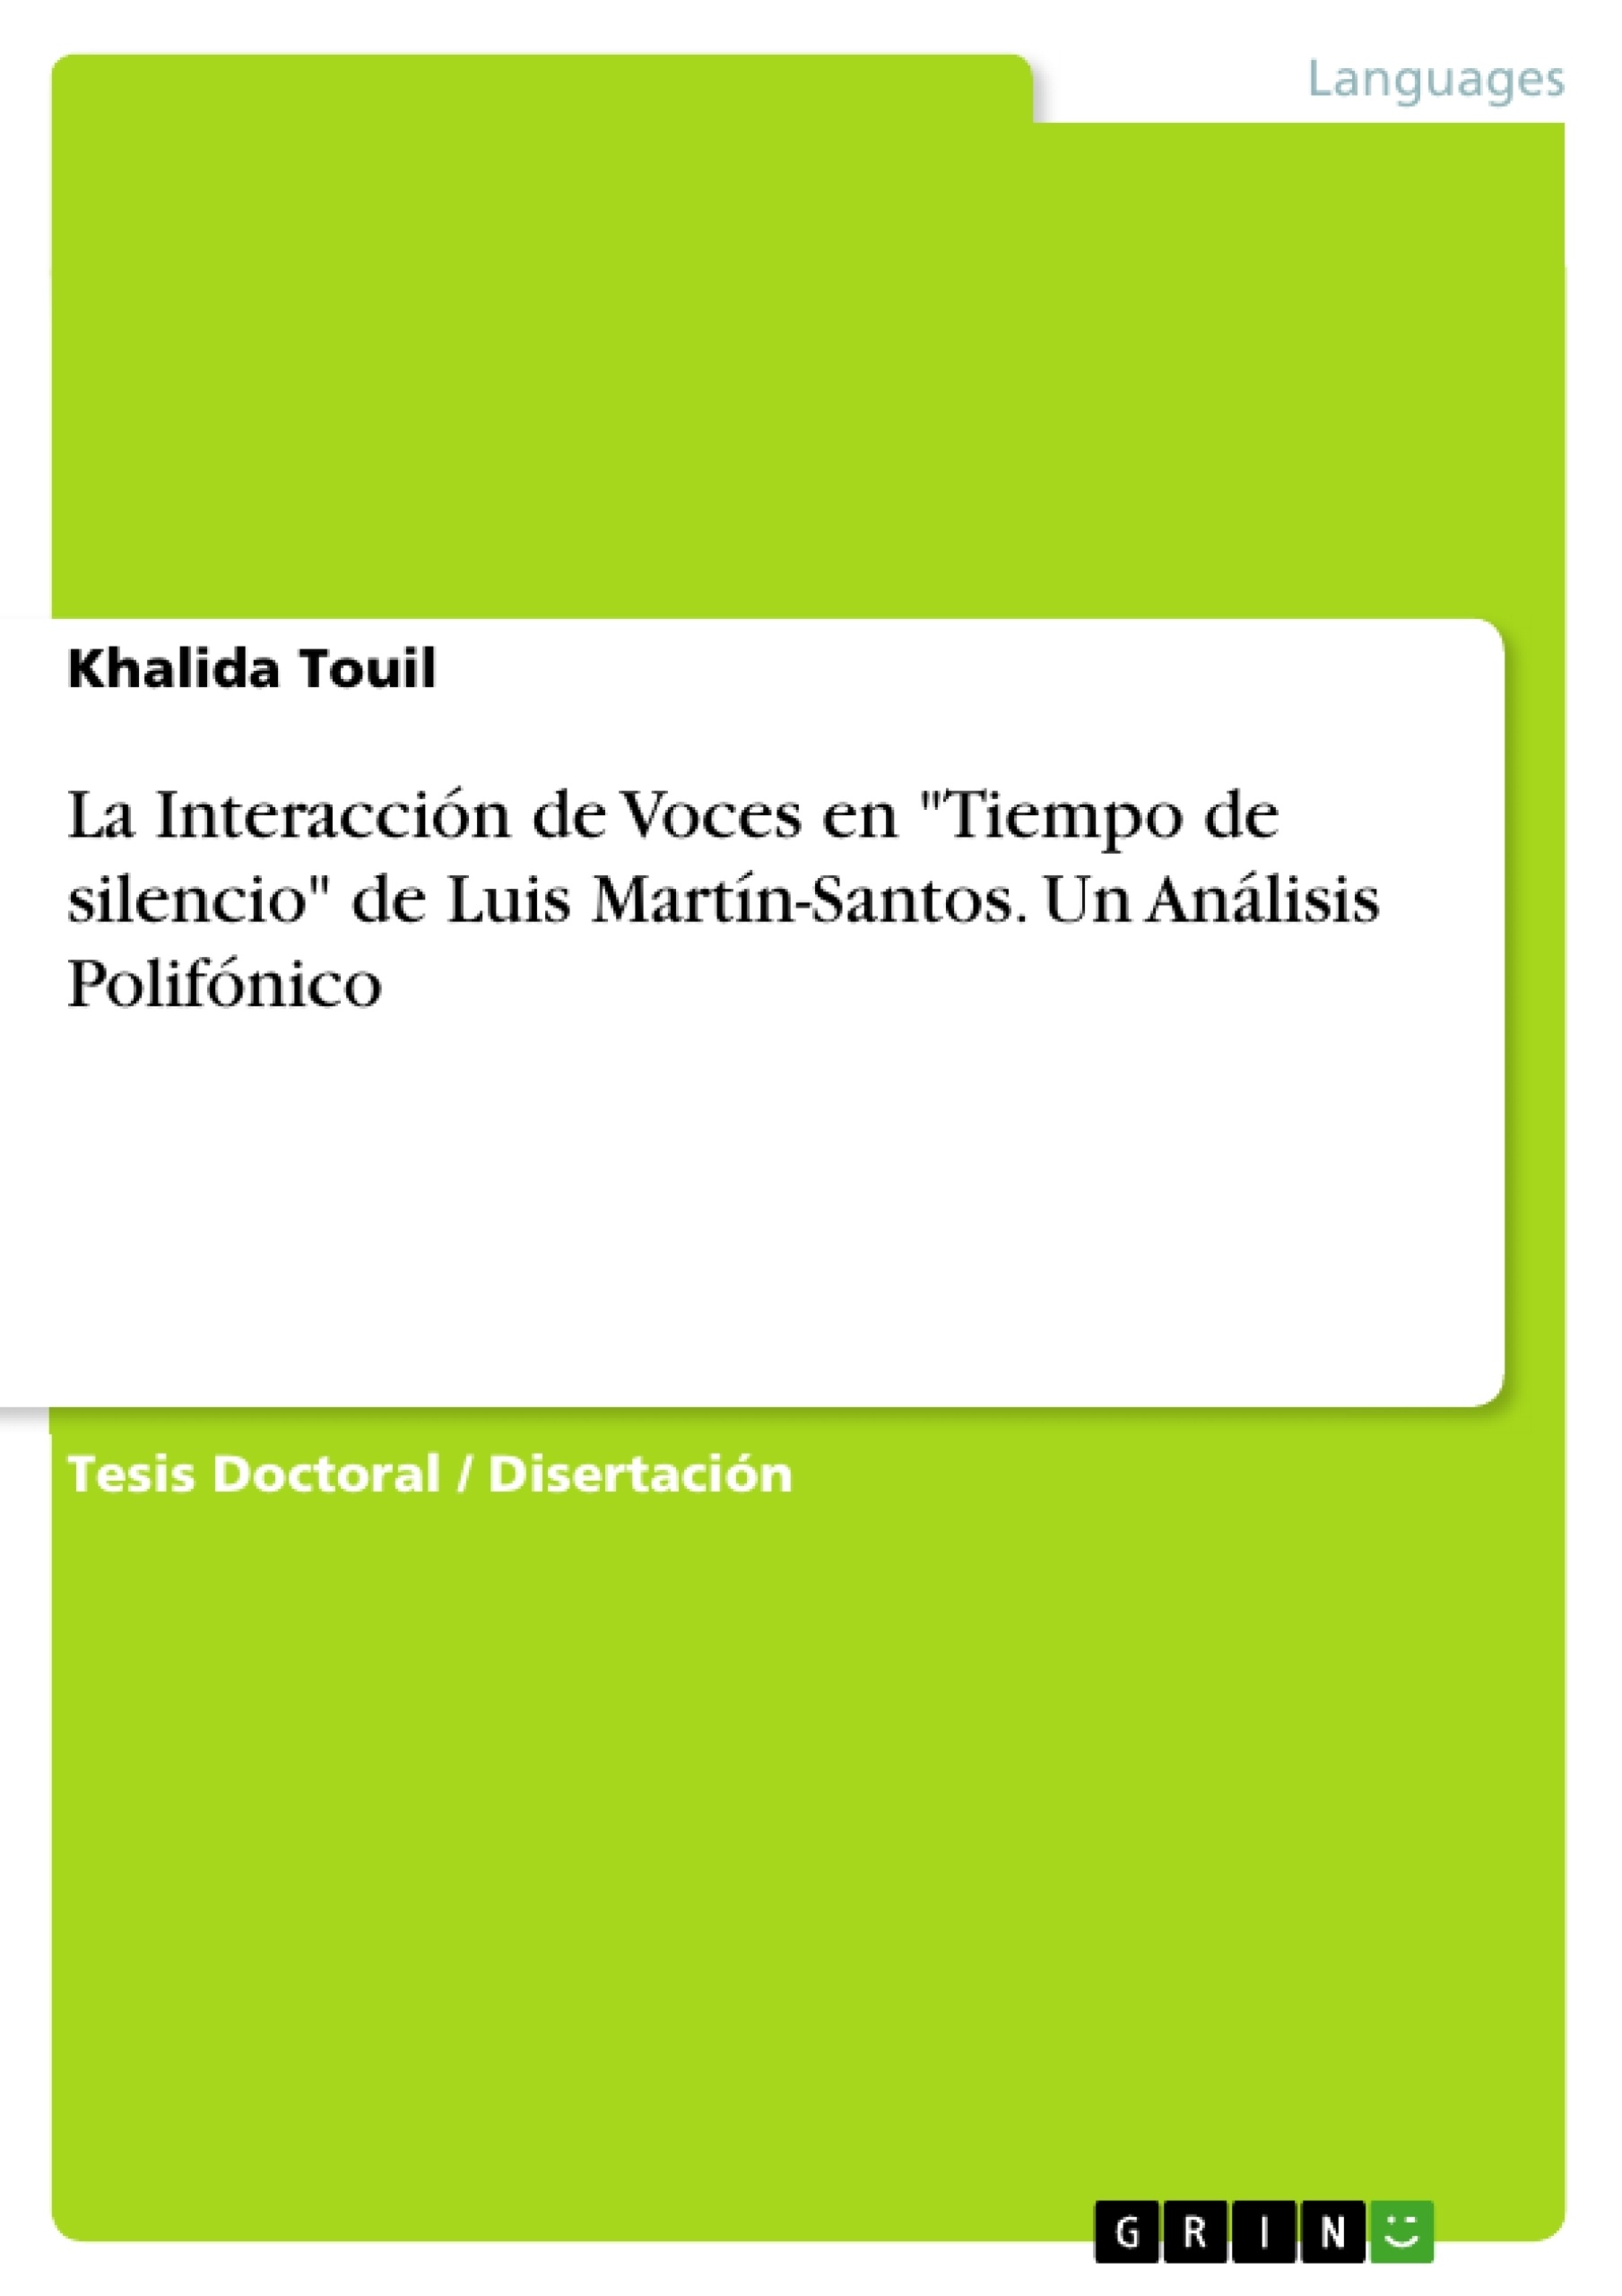 Título: La Interacción de Voces en "Tiempo de silencio" de Luis Martín-Santos. Un Análisis Polifónico